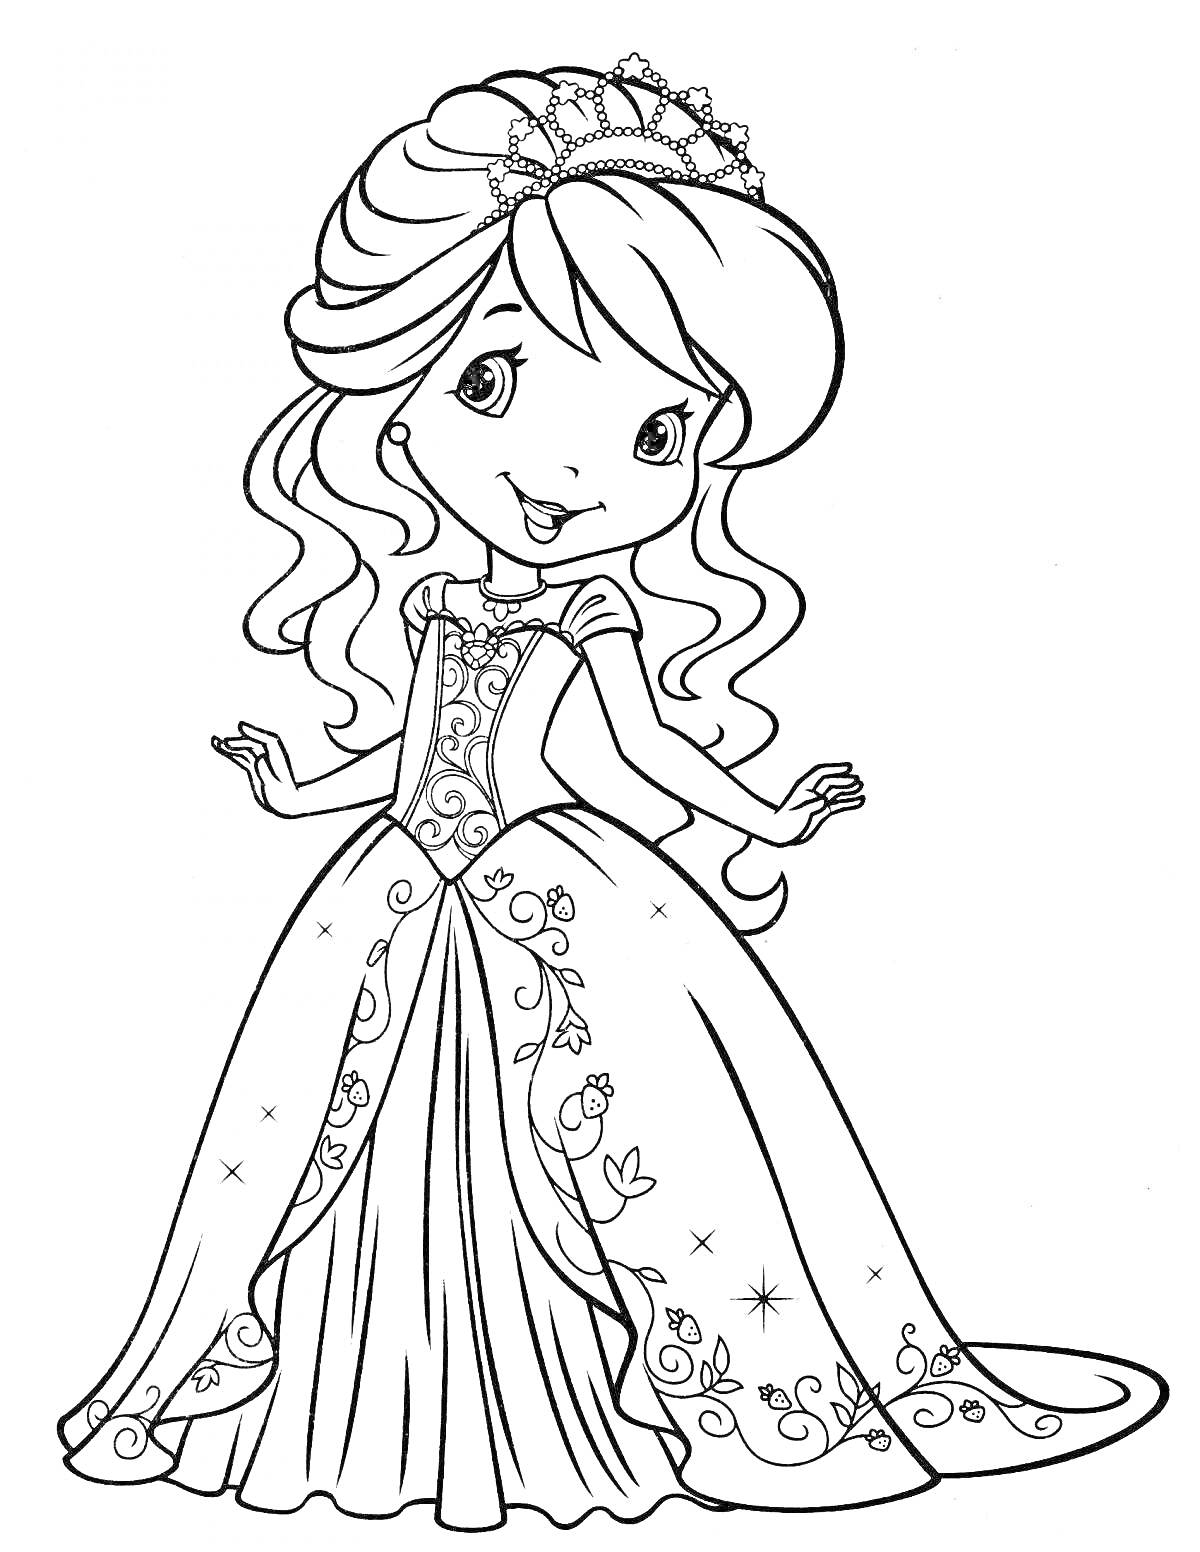 Раскраска Принцесса в длинном платье с узорами и короной на голове